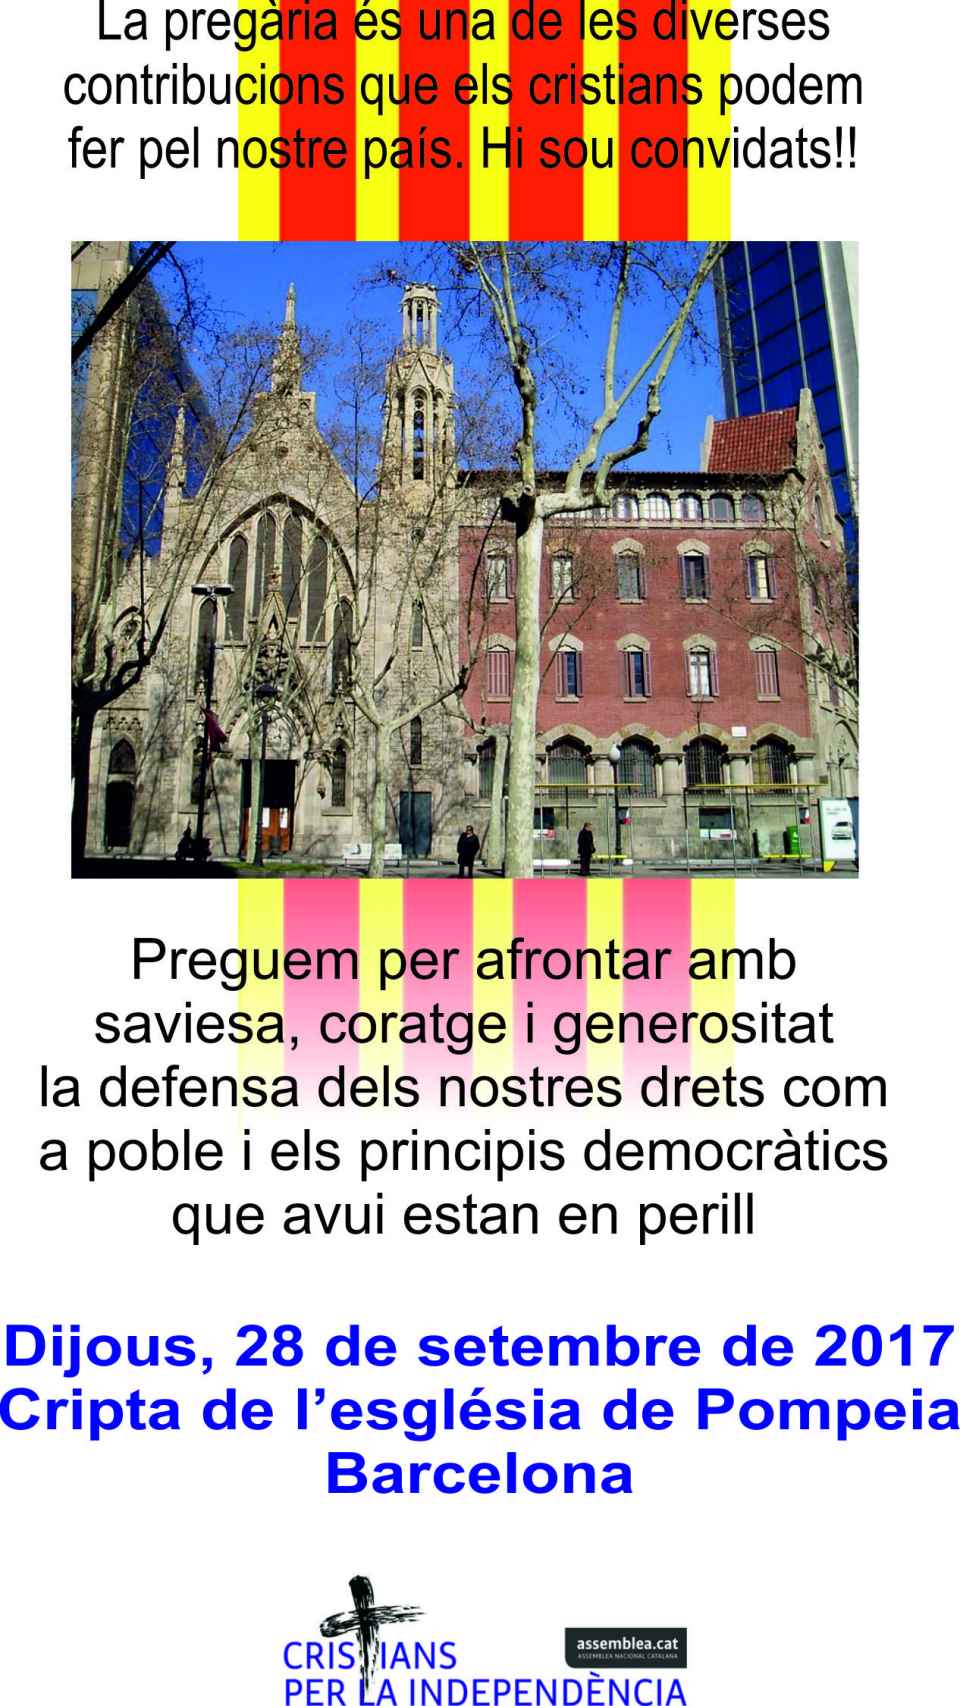 Uno de los folletos que reparten los cristianos independentistas de Cataluña.